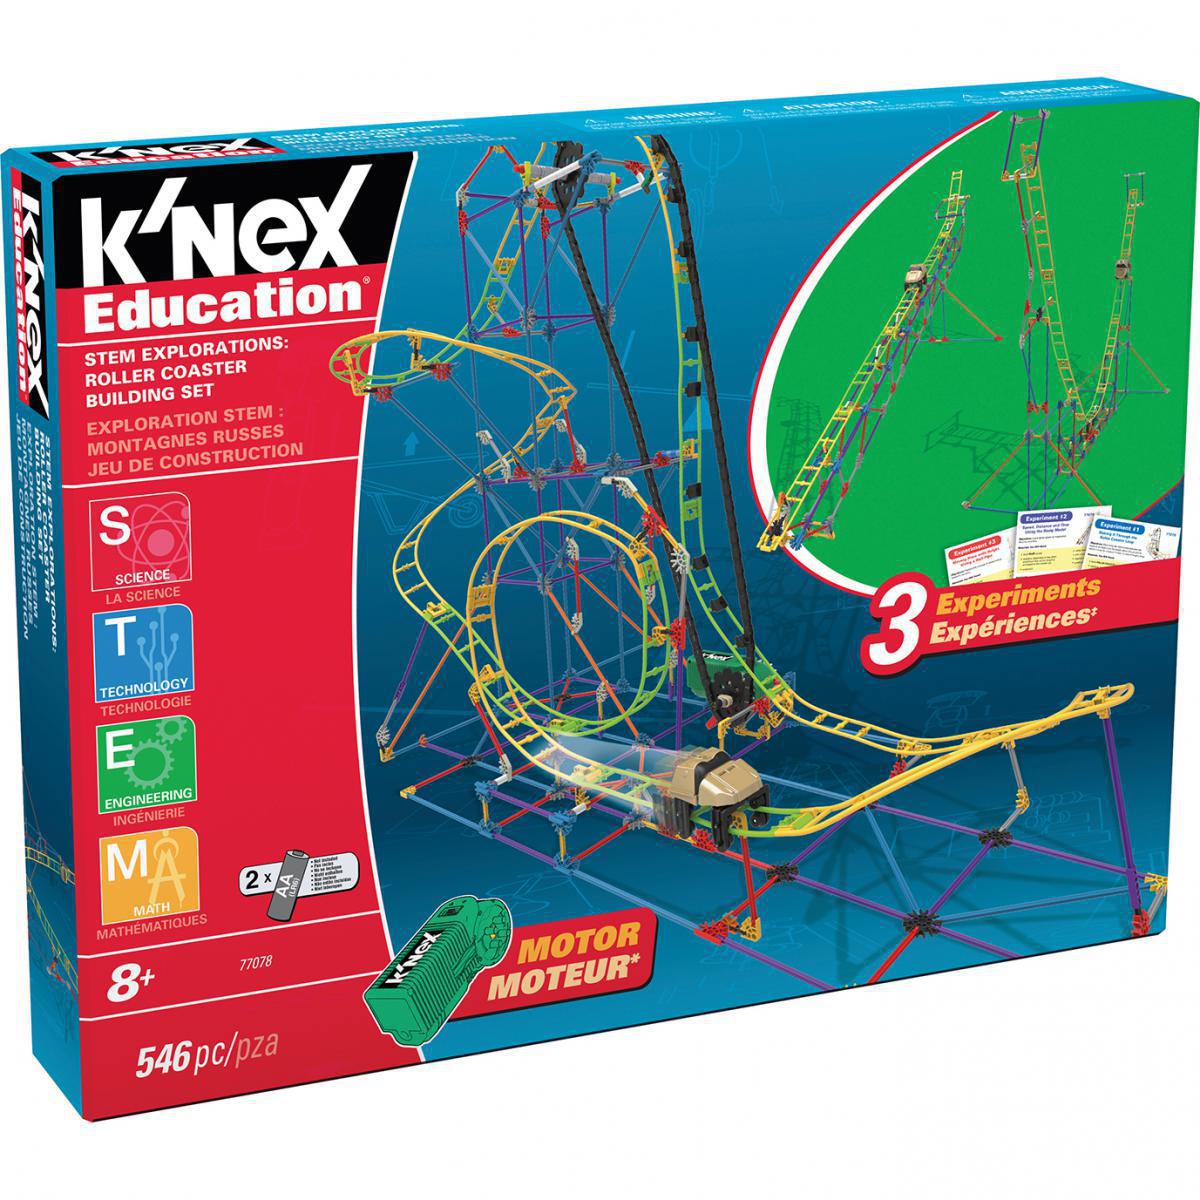  K?Nex® STEM Explorations Roller Coaster Building Set 